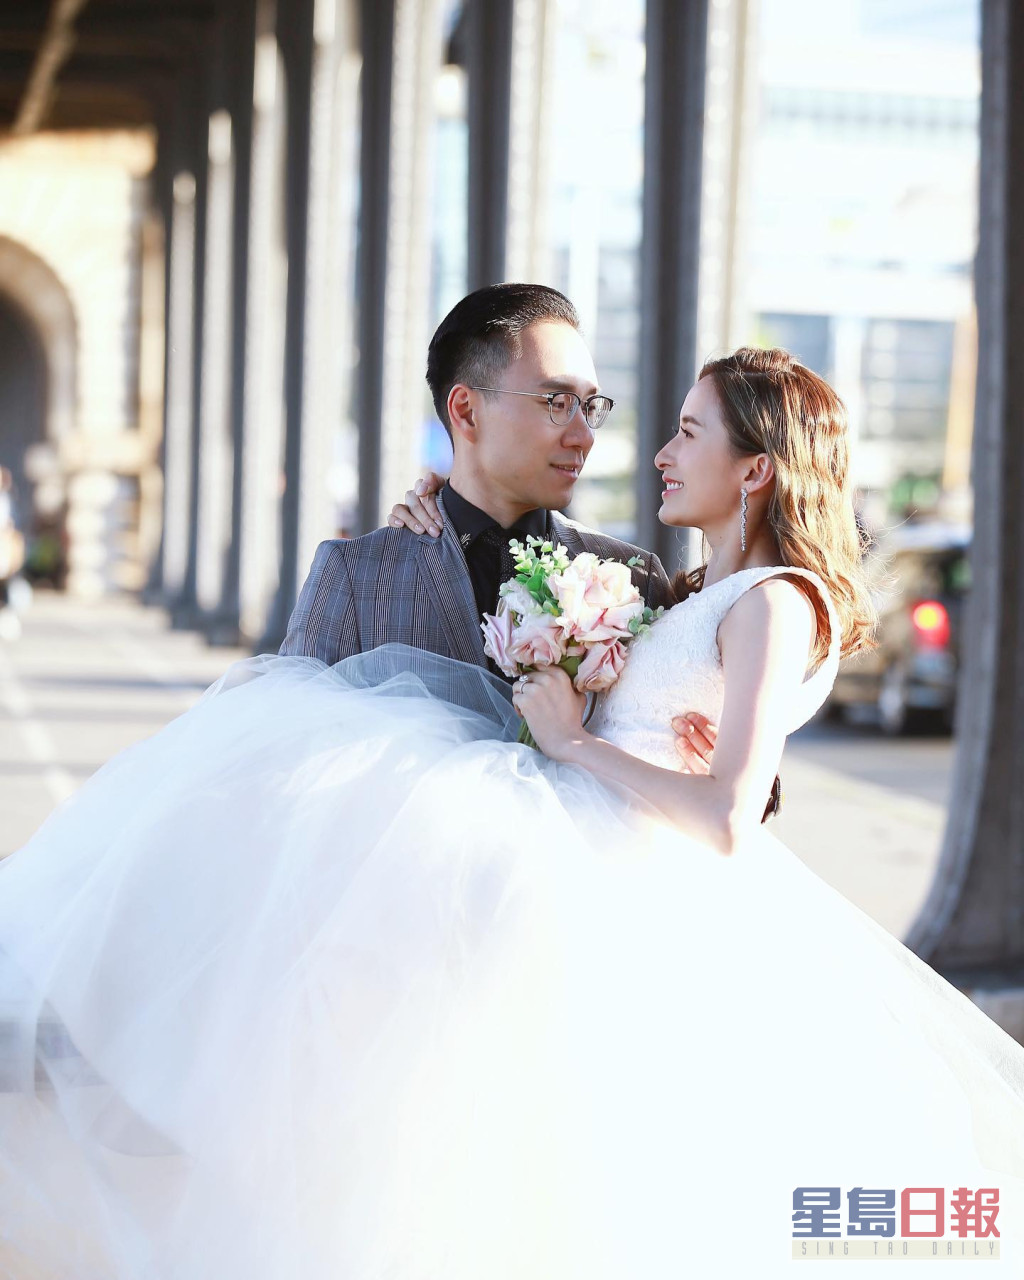 沈卓盈喺2019年与经营内衣生意的有米老公Calvin结婚。